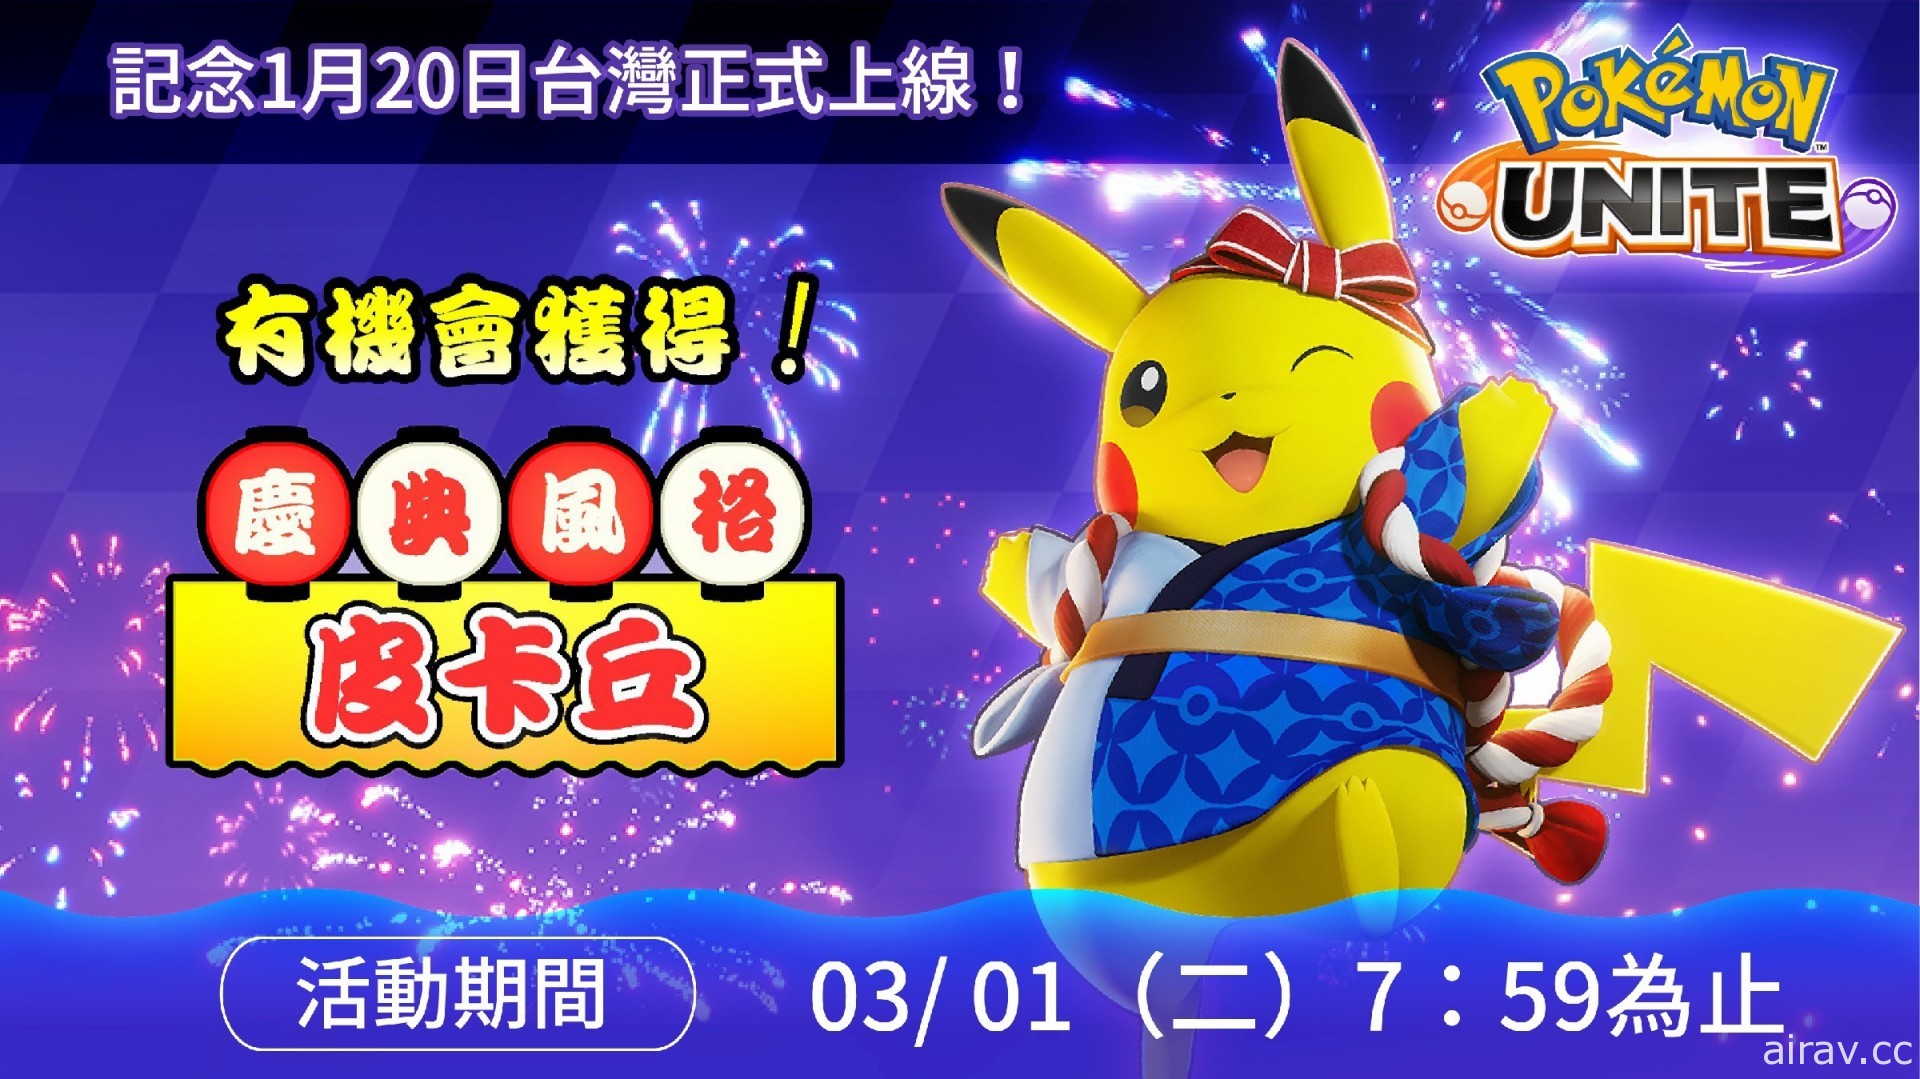 《寶可夢大集結》手機版宣布台灣區服務上線日 推出皮卡丘「慶典風格」特別電子服